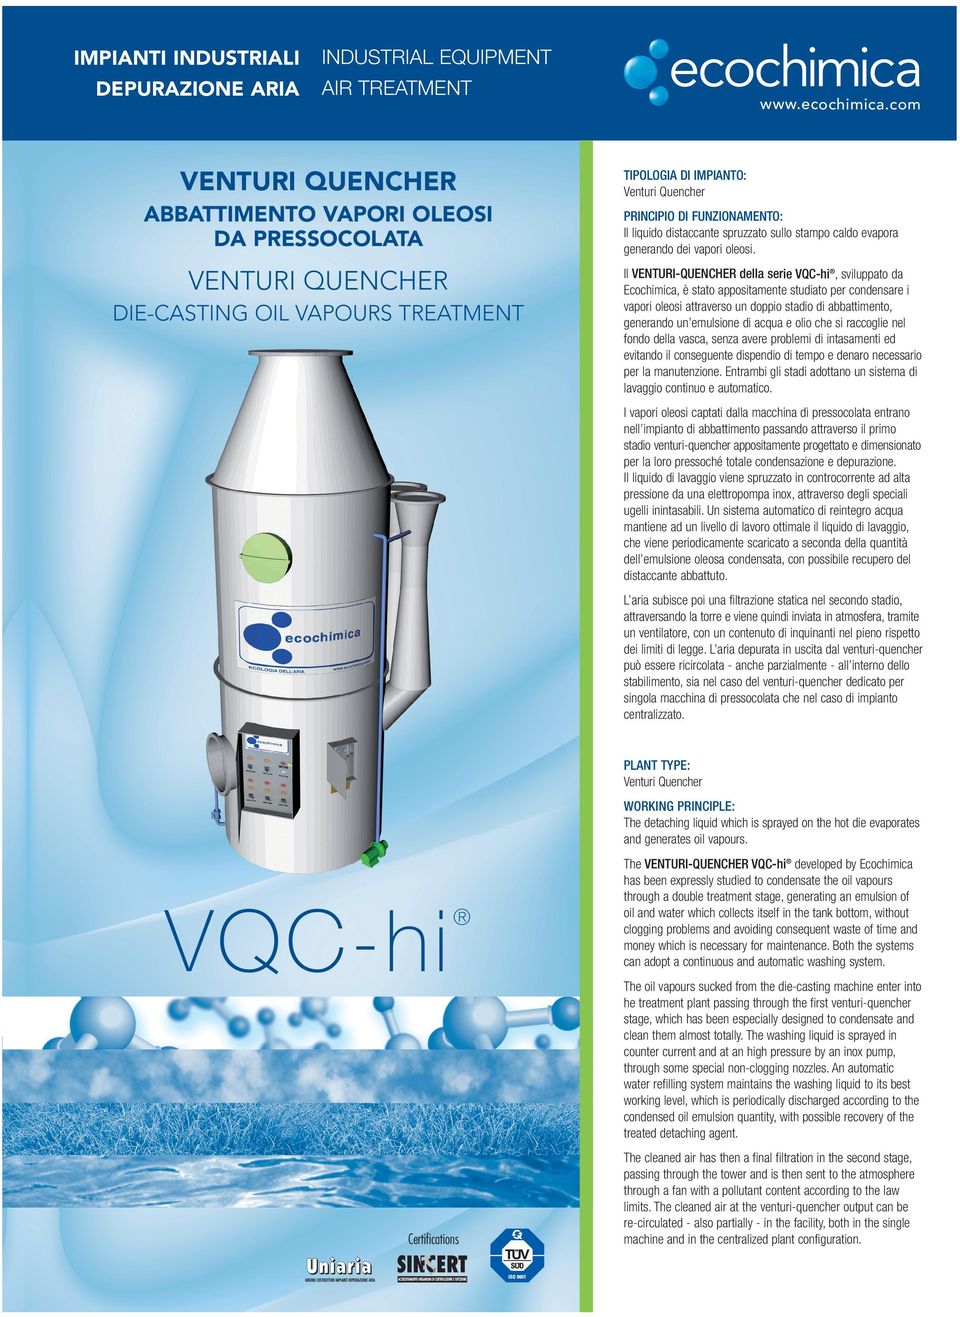 Il VENTURI-QUENCHER della serie VQC-hi, sviluppato da Ecochimica, è stato appositamente studiato per condensare i vapori oleosi attraverso un doppio stadio di abbattimento, generando un emulsione di